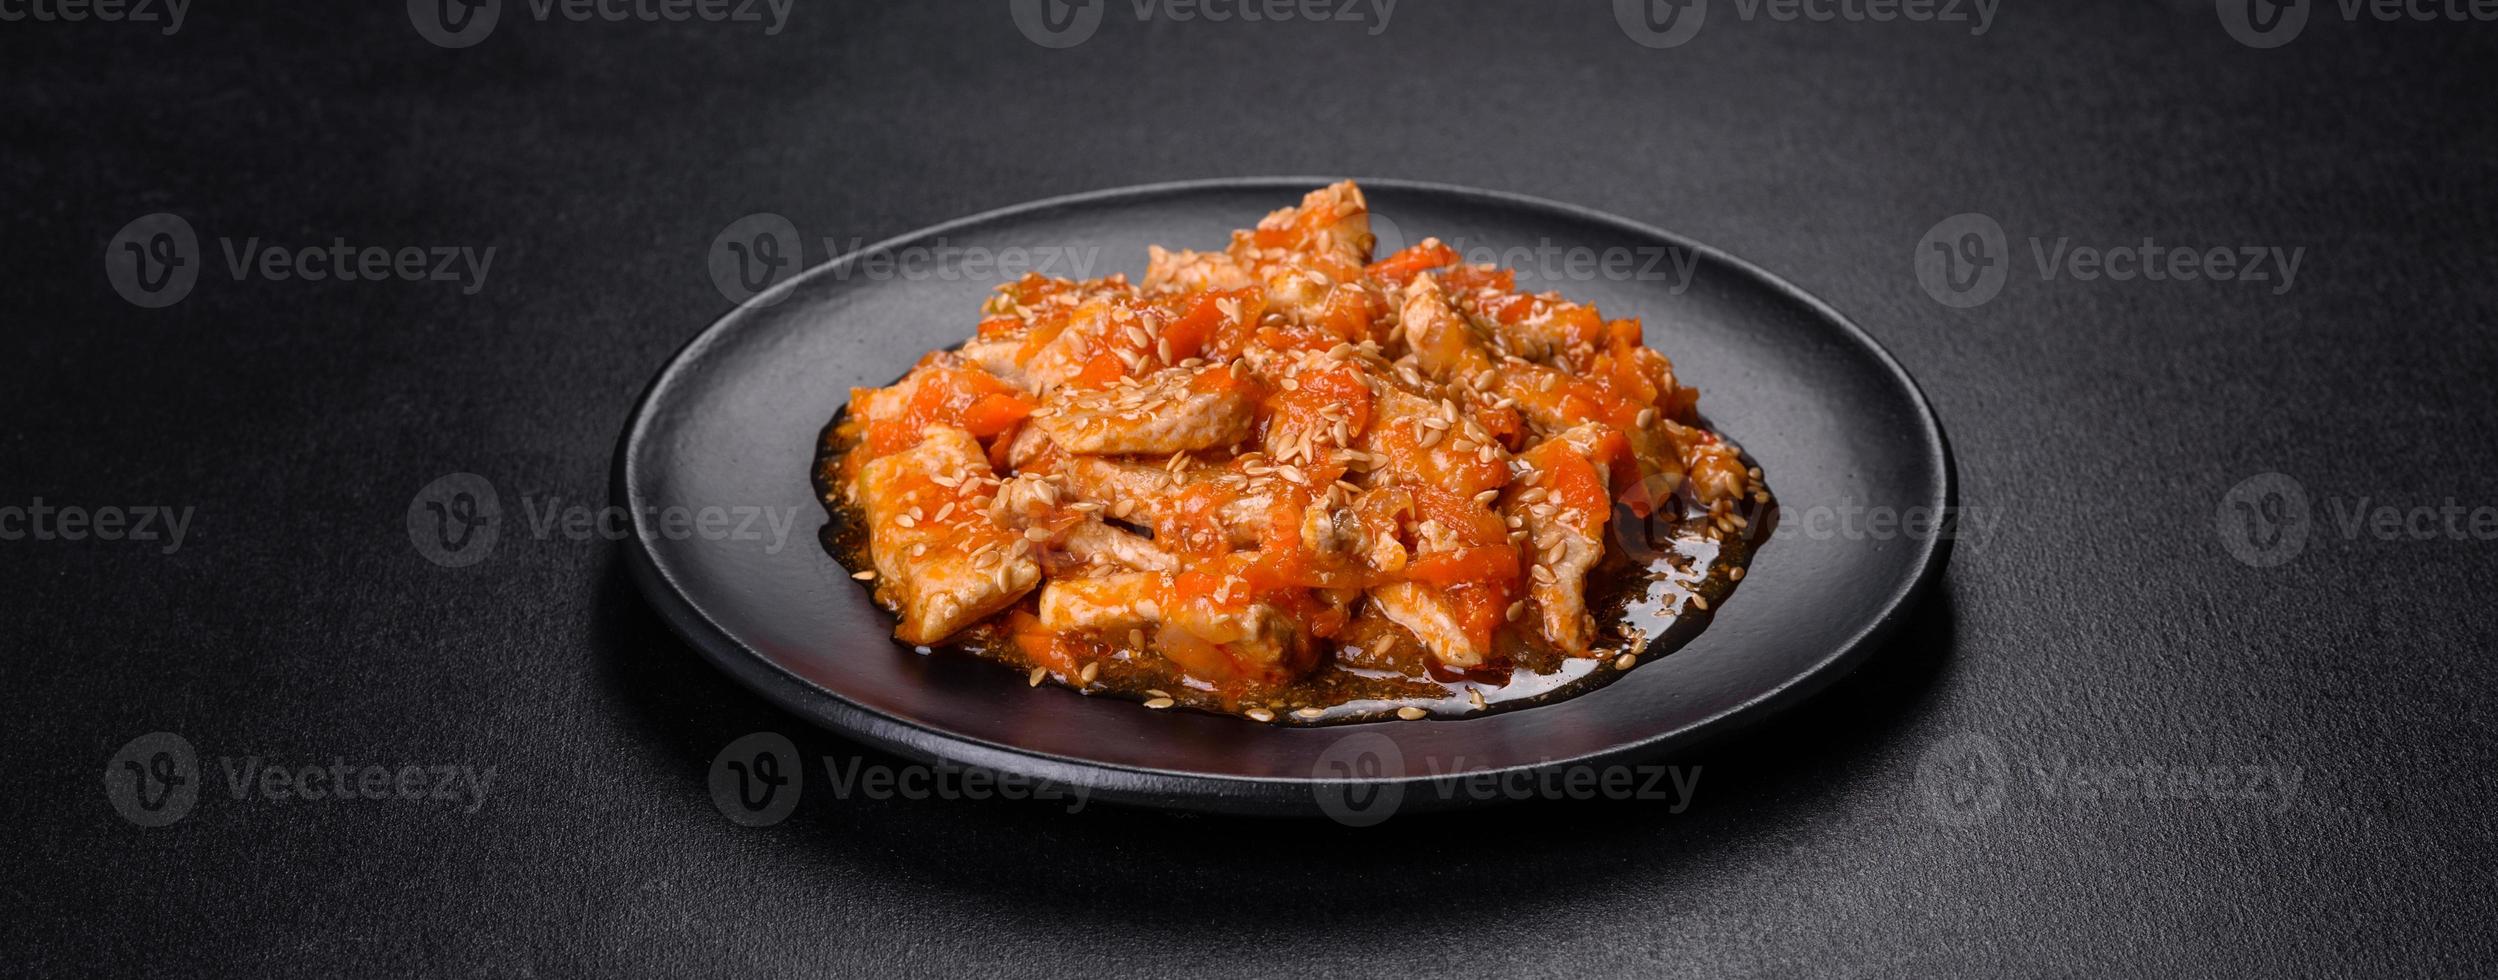 teriyaki kip met saus, sesam, kruiden en specerijen op een donkere achtergrond foto